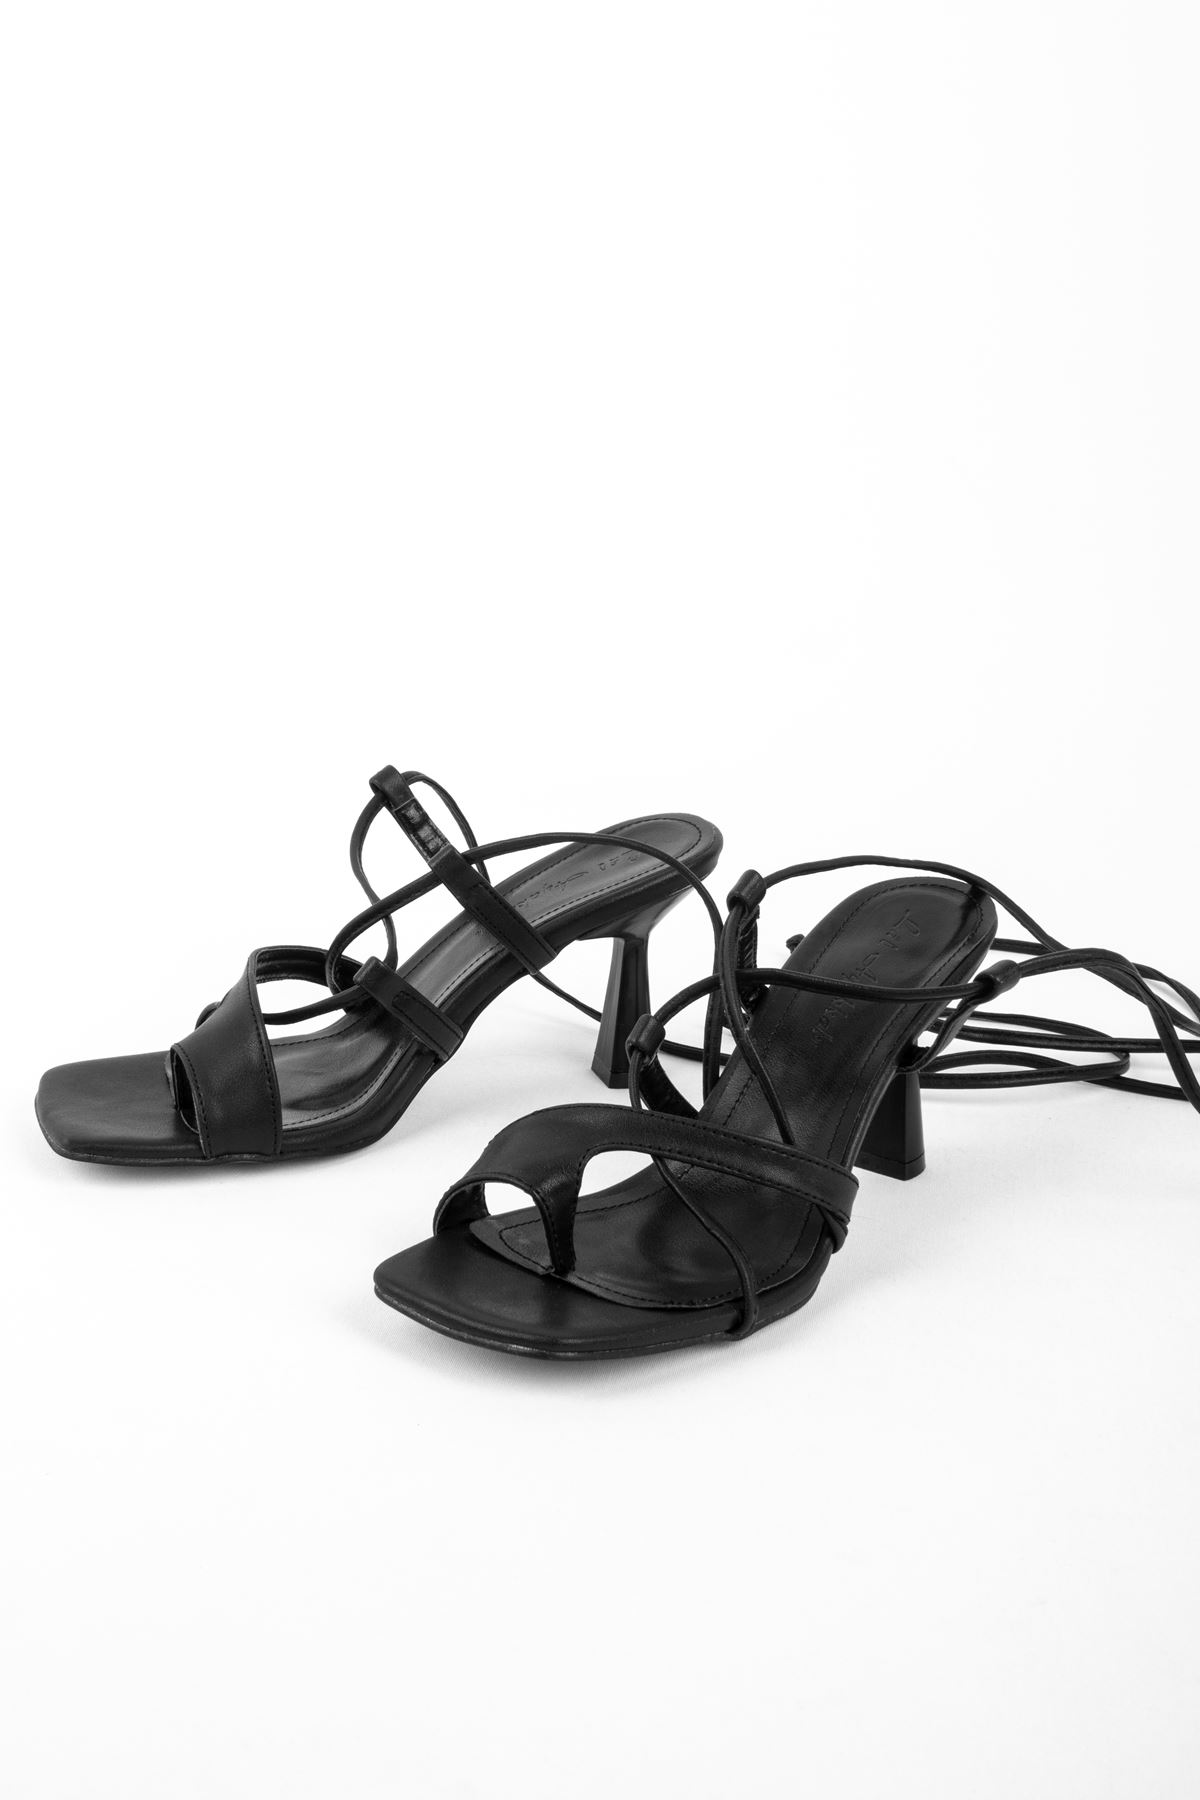 Olive Kadın Topuklu Ayakkabı Parmak Geçme Detaylı-siyah